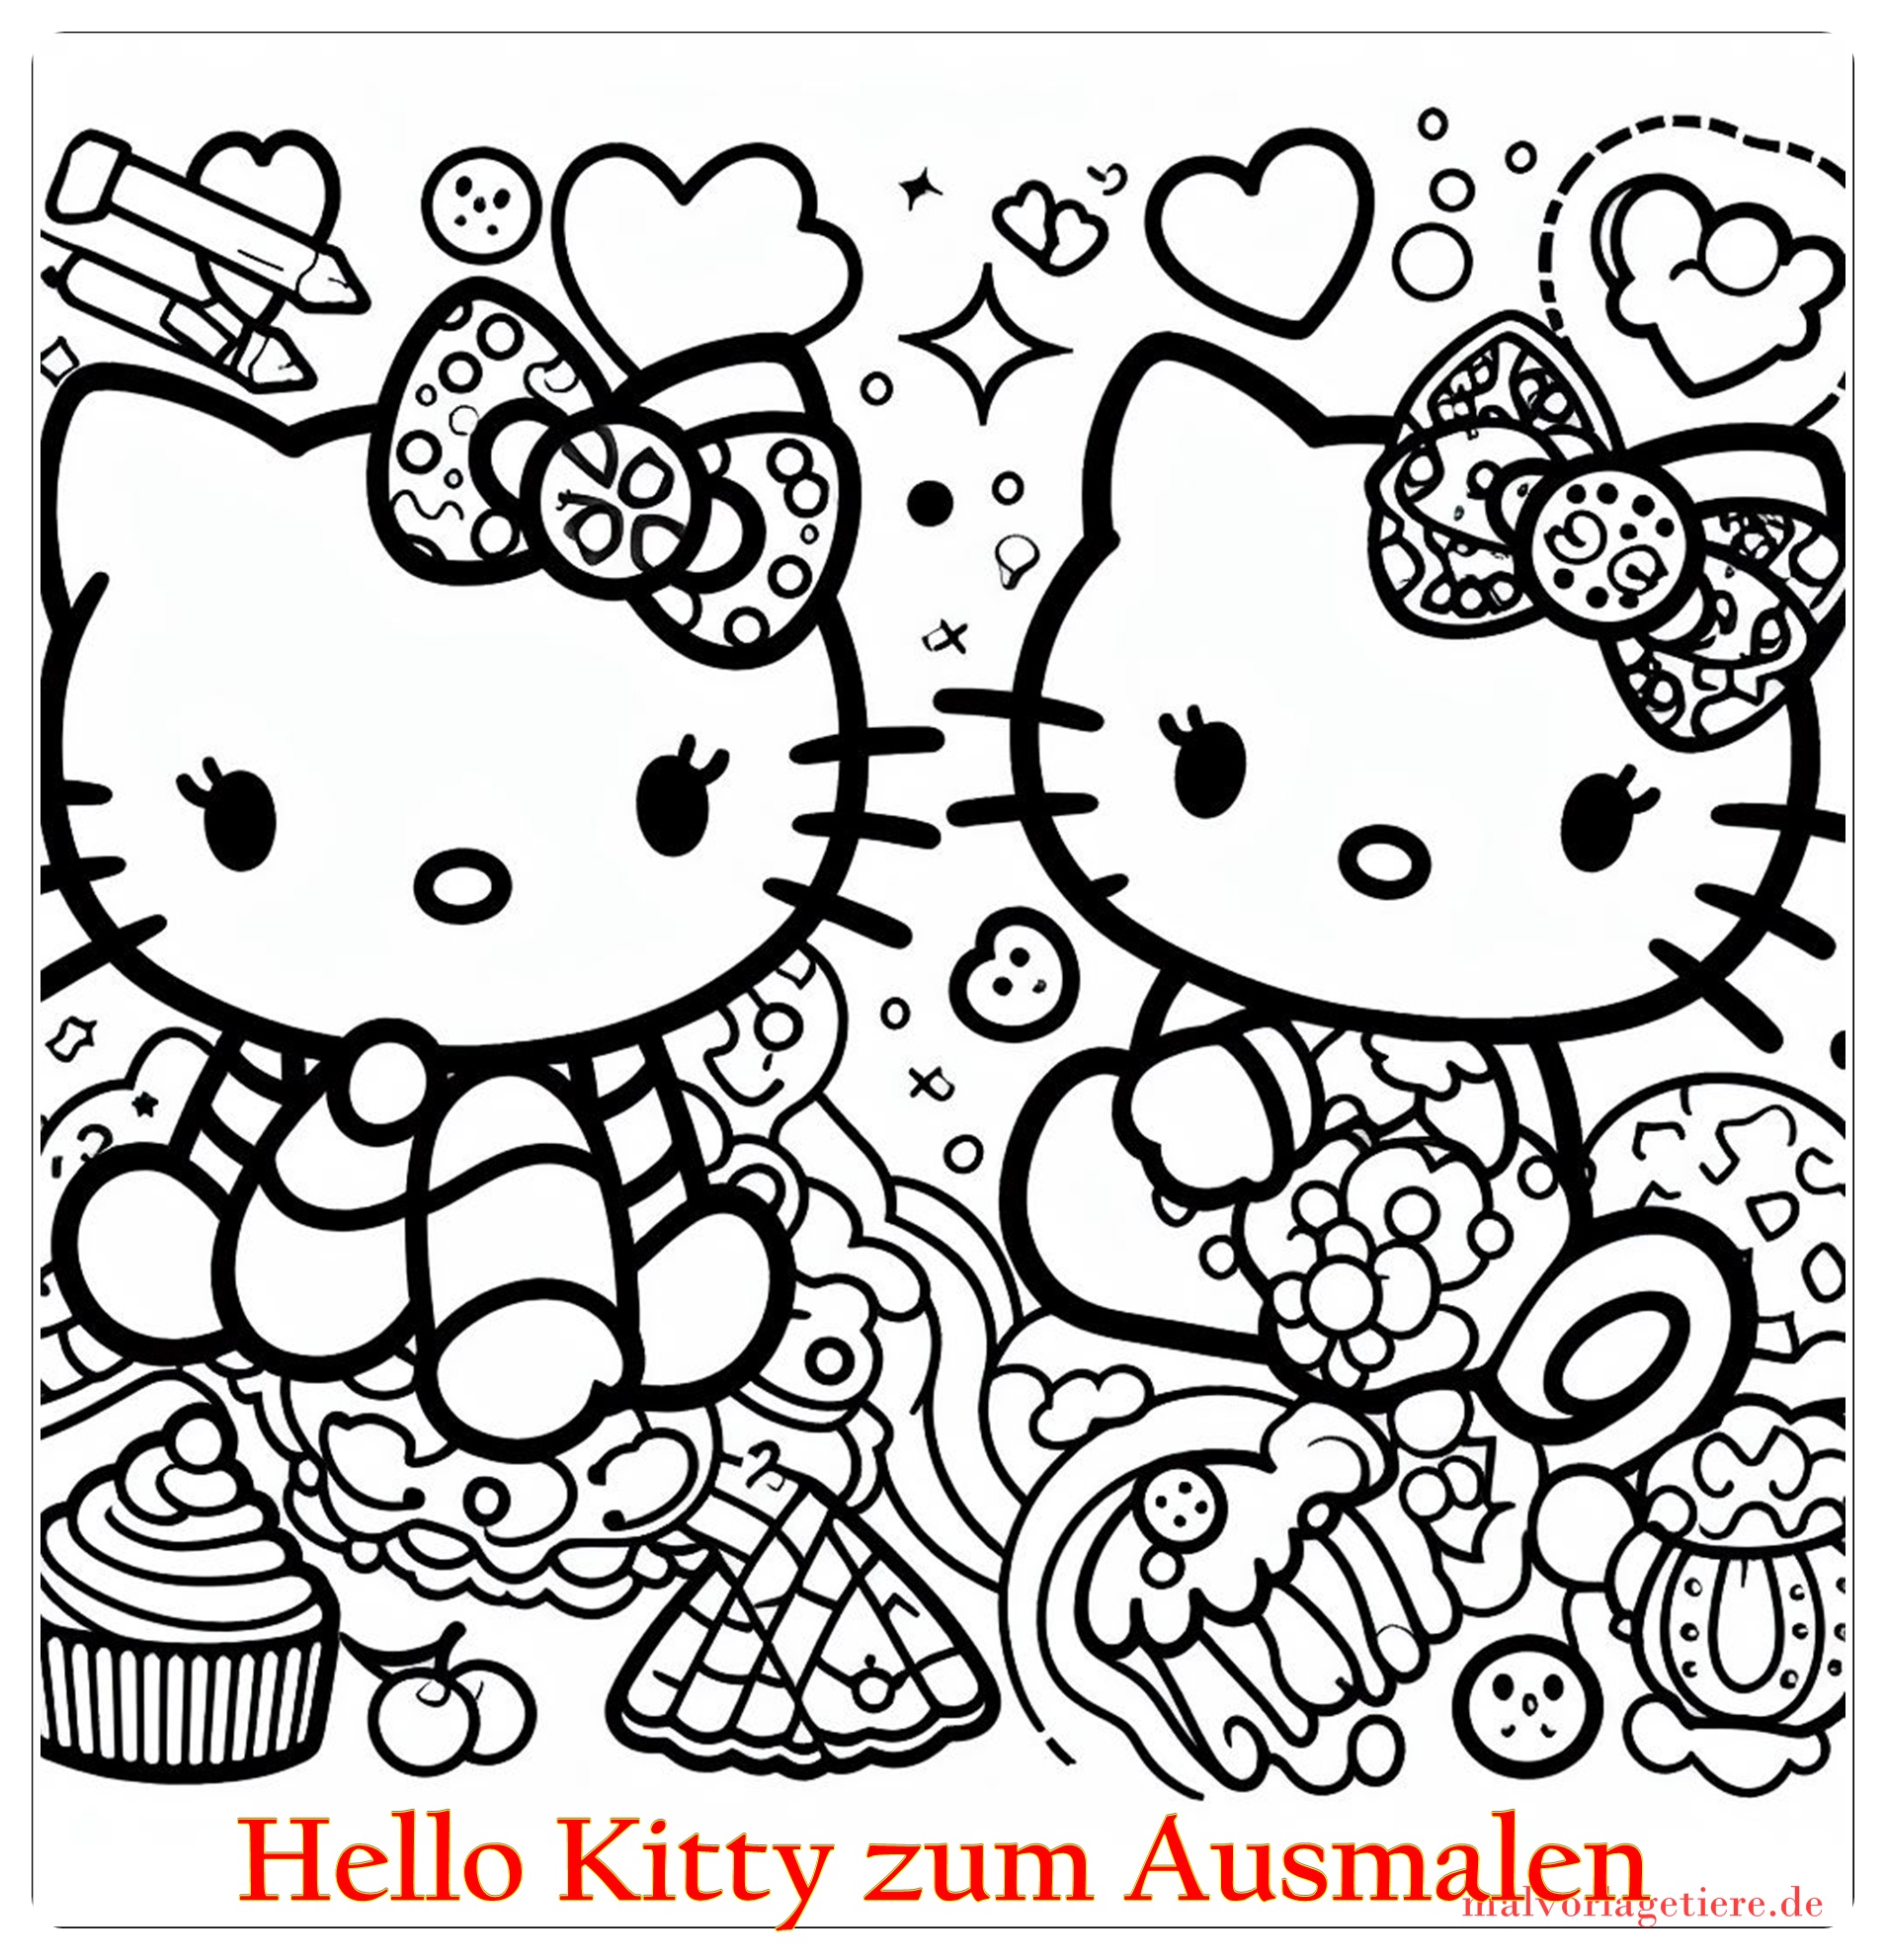 Hello Kitty zum Ausmalen 04 by malvorlagetiere